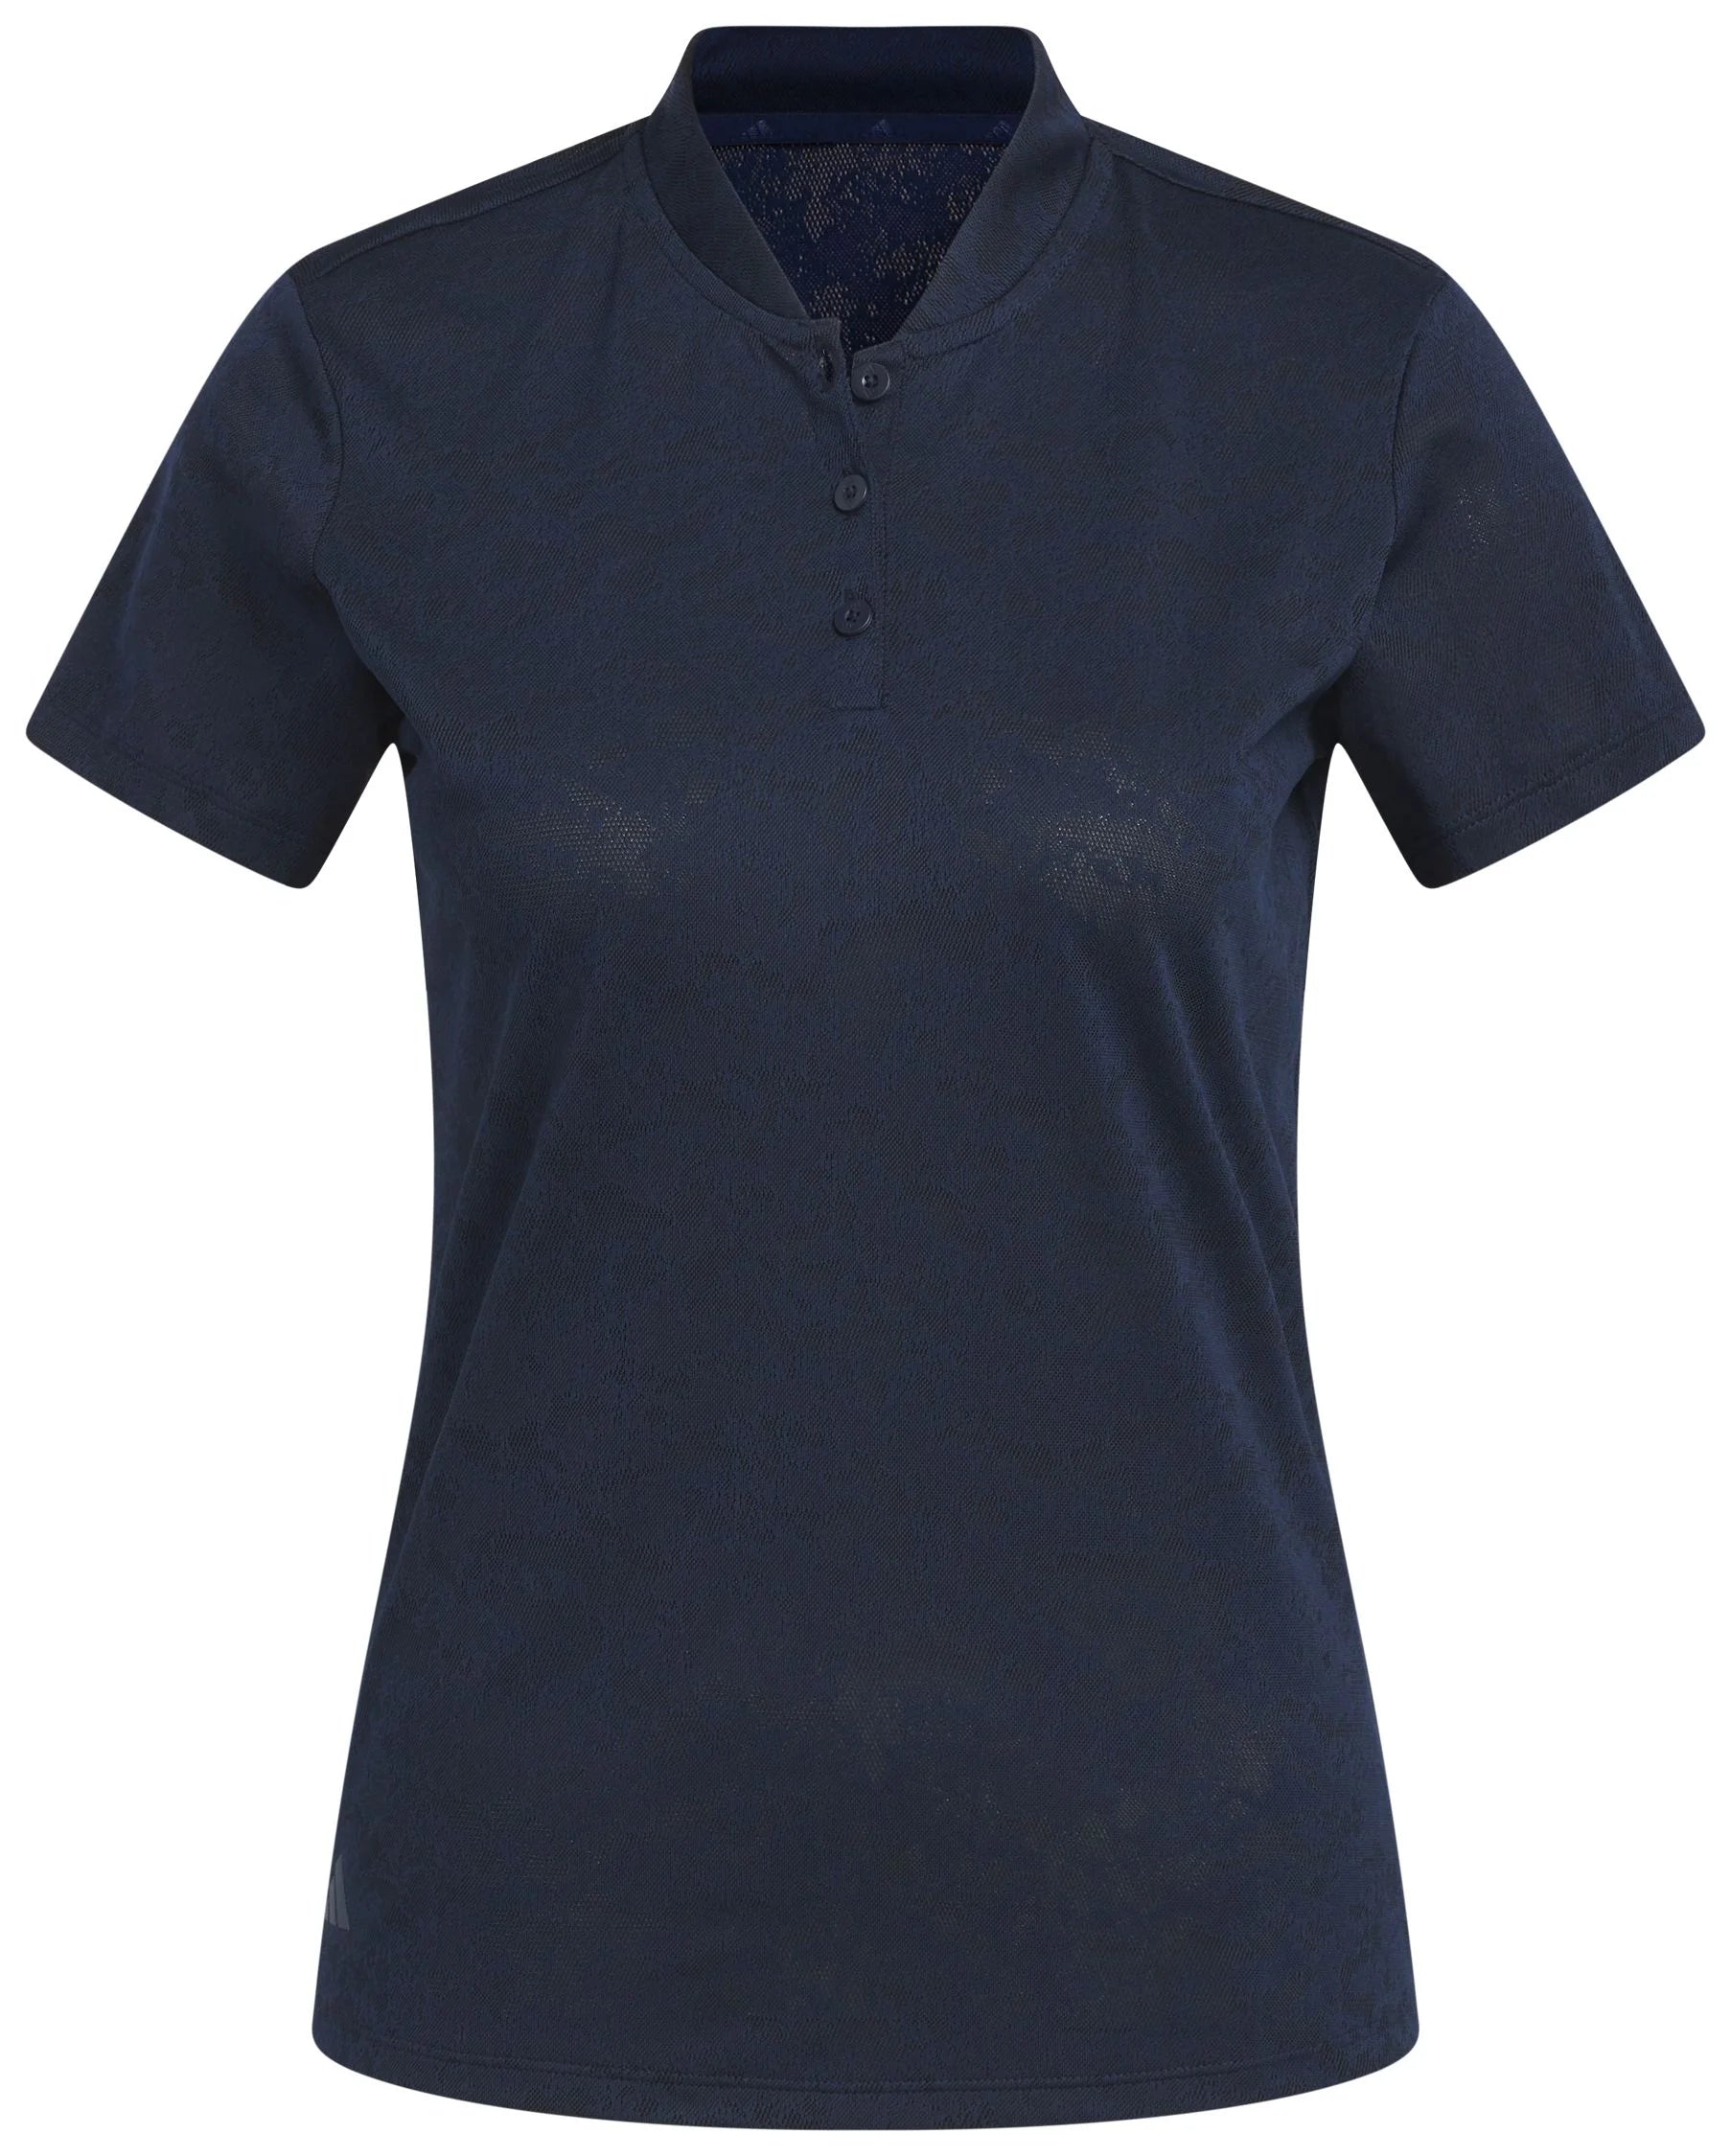 Ladie's Adidas Climacool Jacquard Mesh Short Sleeve Polo Shirt